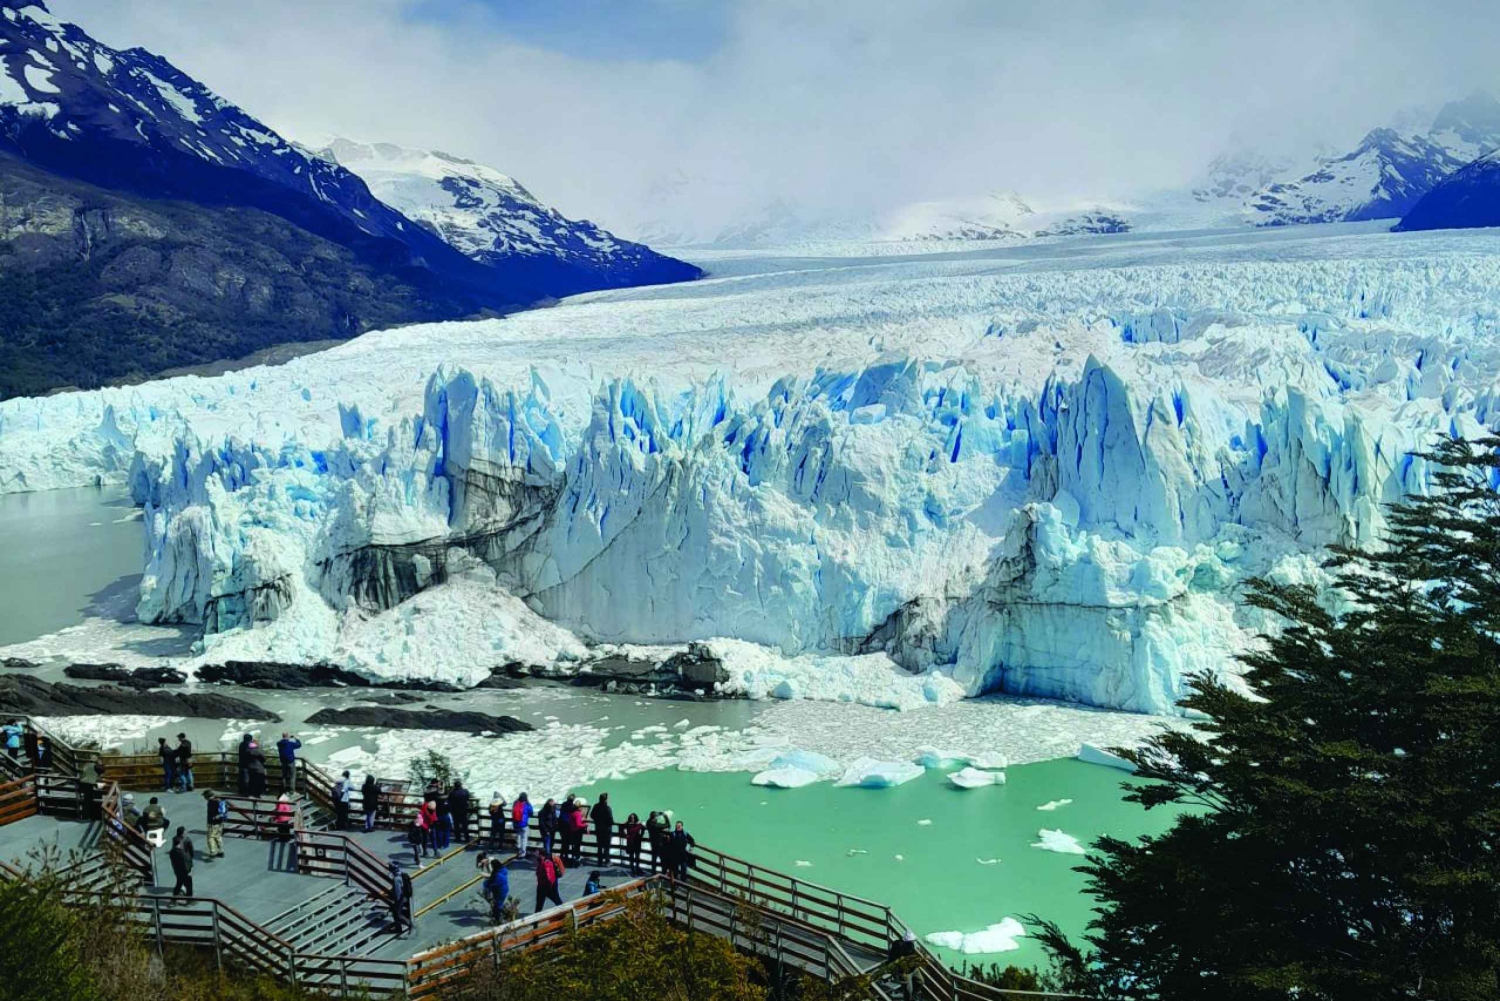 El Calafate, Perito Morenon jäätikkö klassinen retki oppaan kanssa